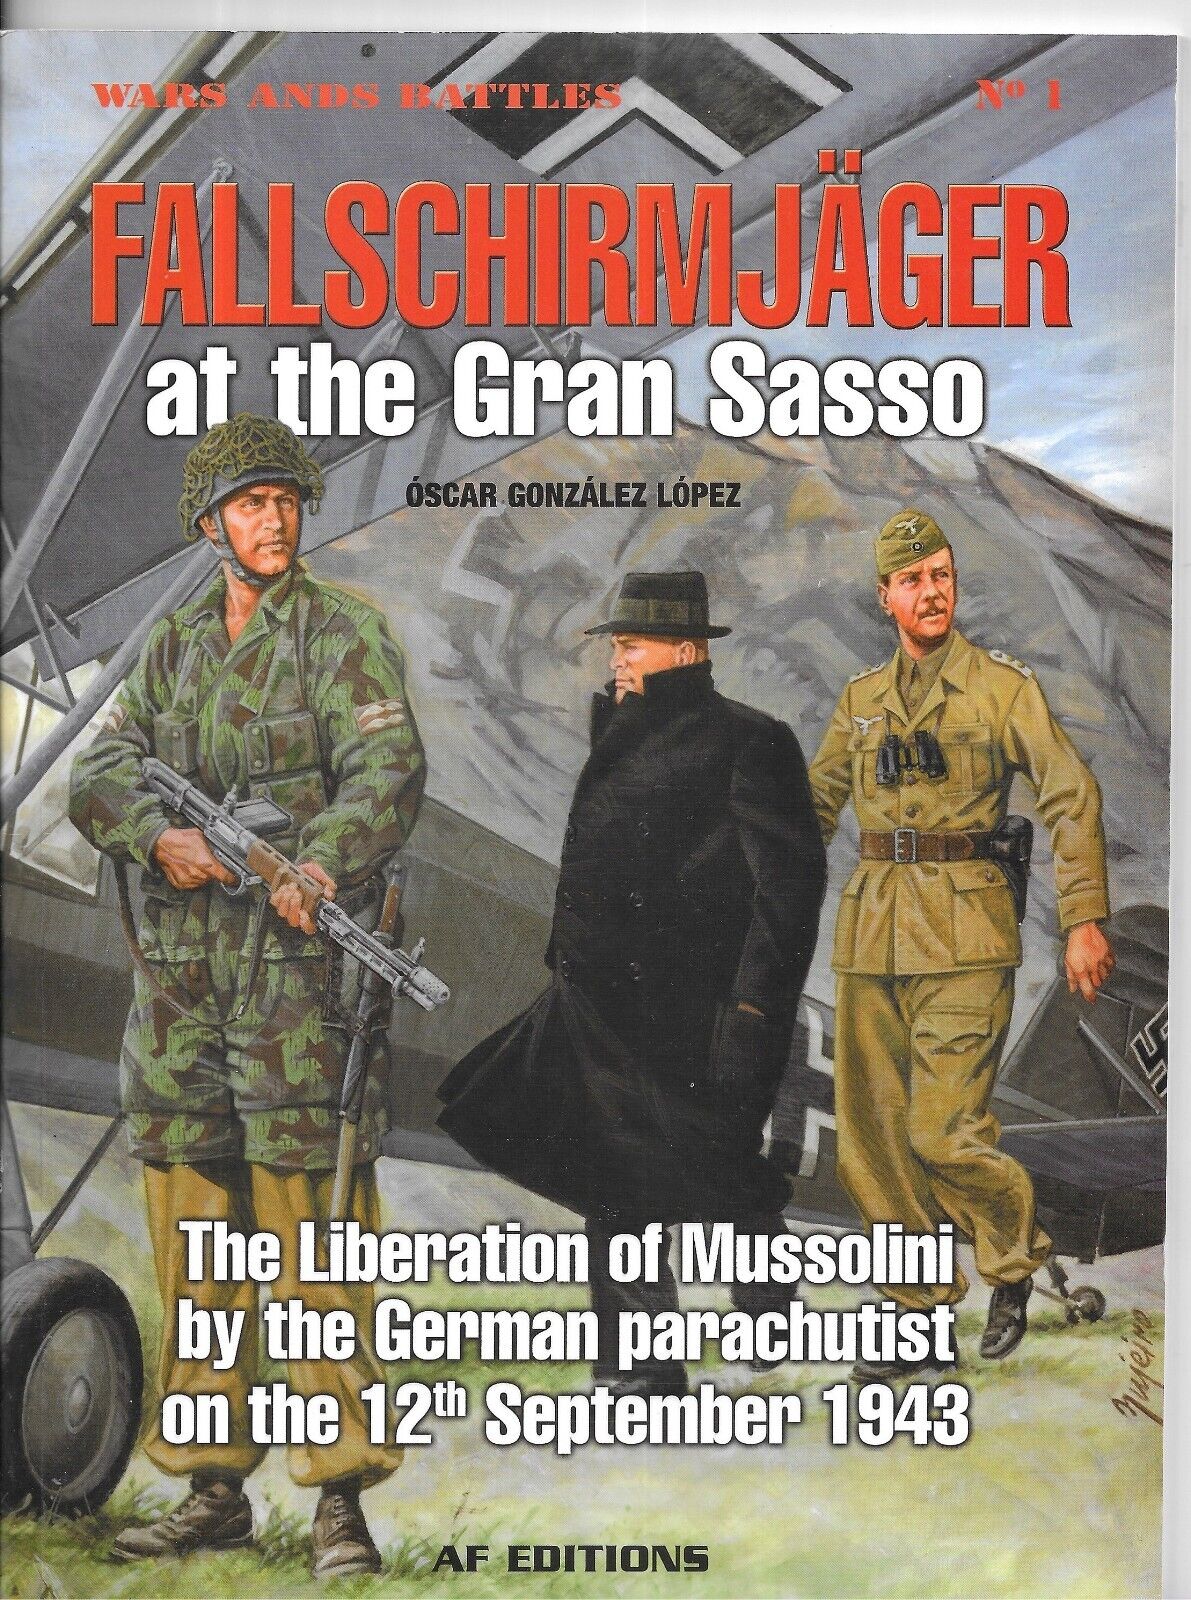 WWII Luftwaffe Fallschirmjager Skorzeny Gran Sasso rescue book